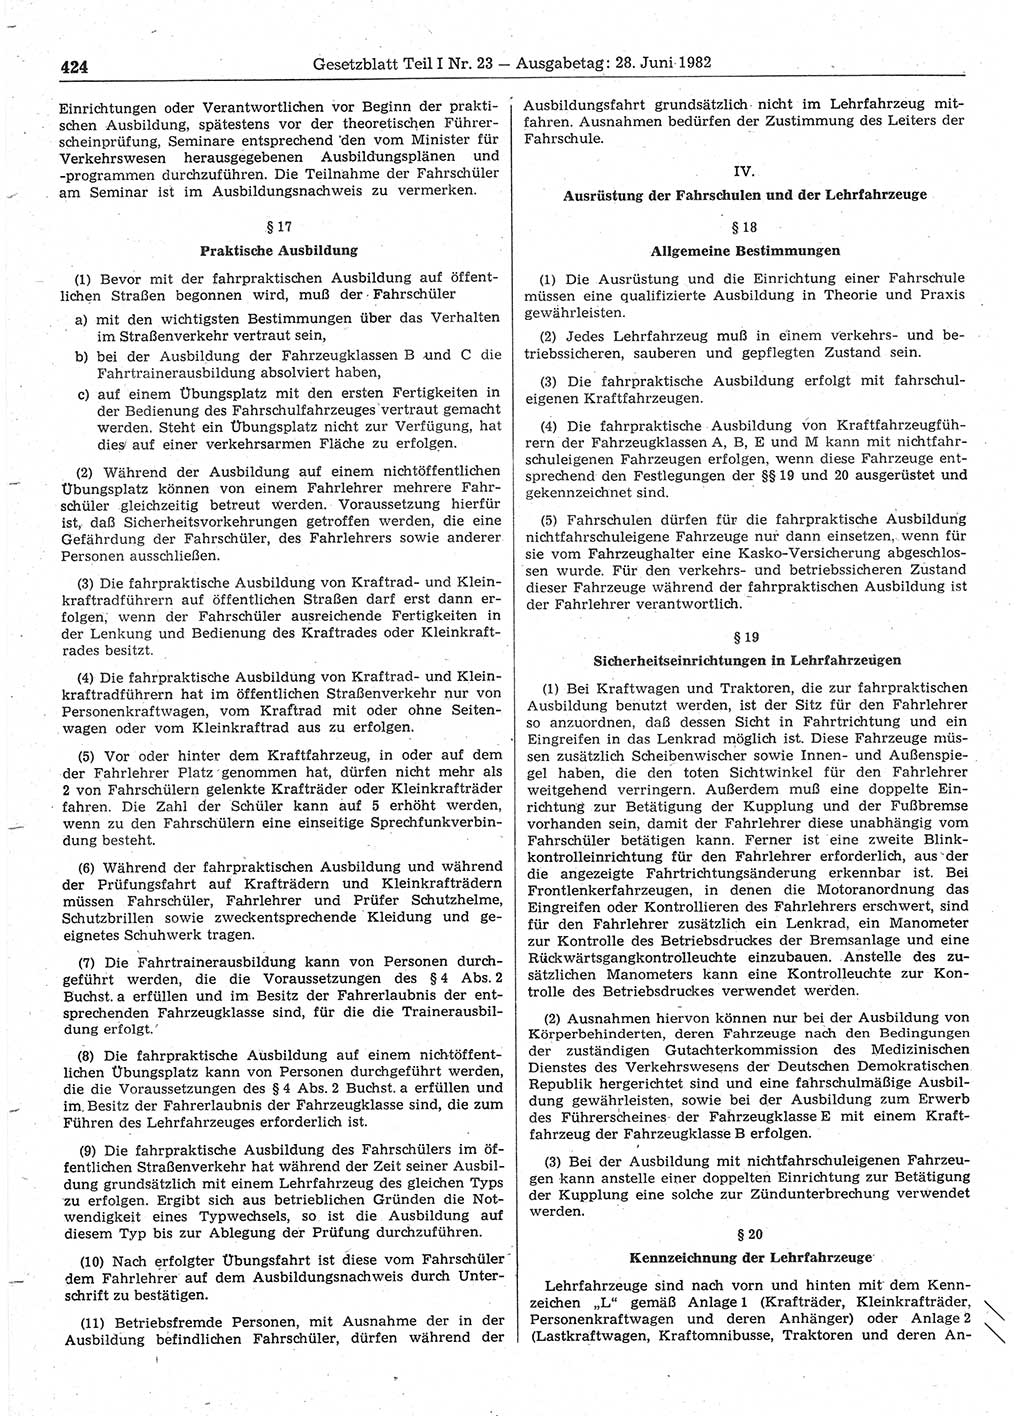 Gesetzblatt (GBl.) der Deutschen Demokratischen Republik (DDR) Teil Ⅰ 1982, Seite 424 (GBl. DDR Ⅰ 1982, S. 424)